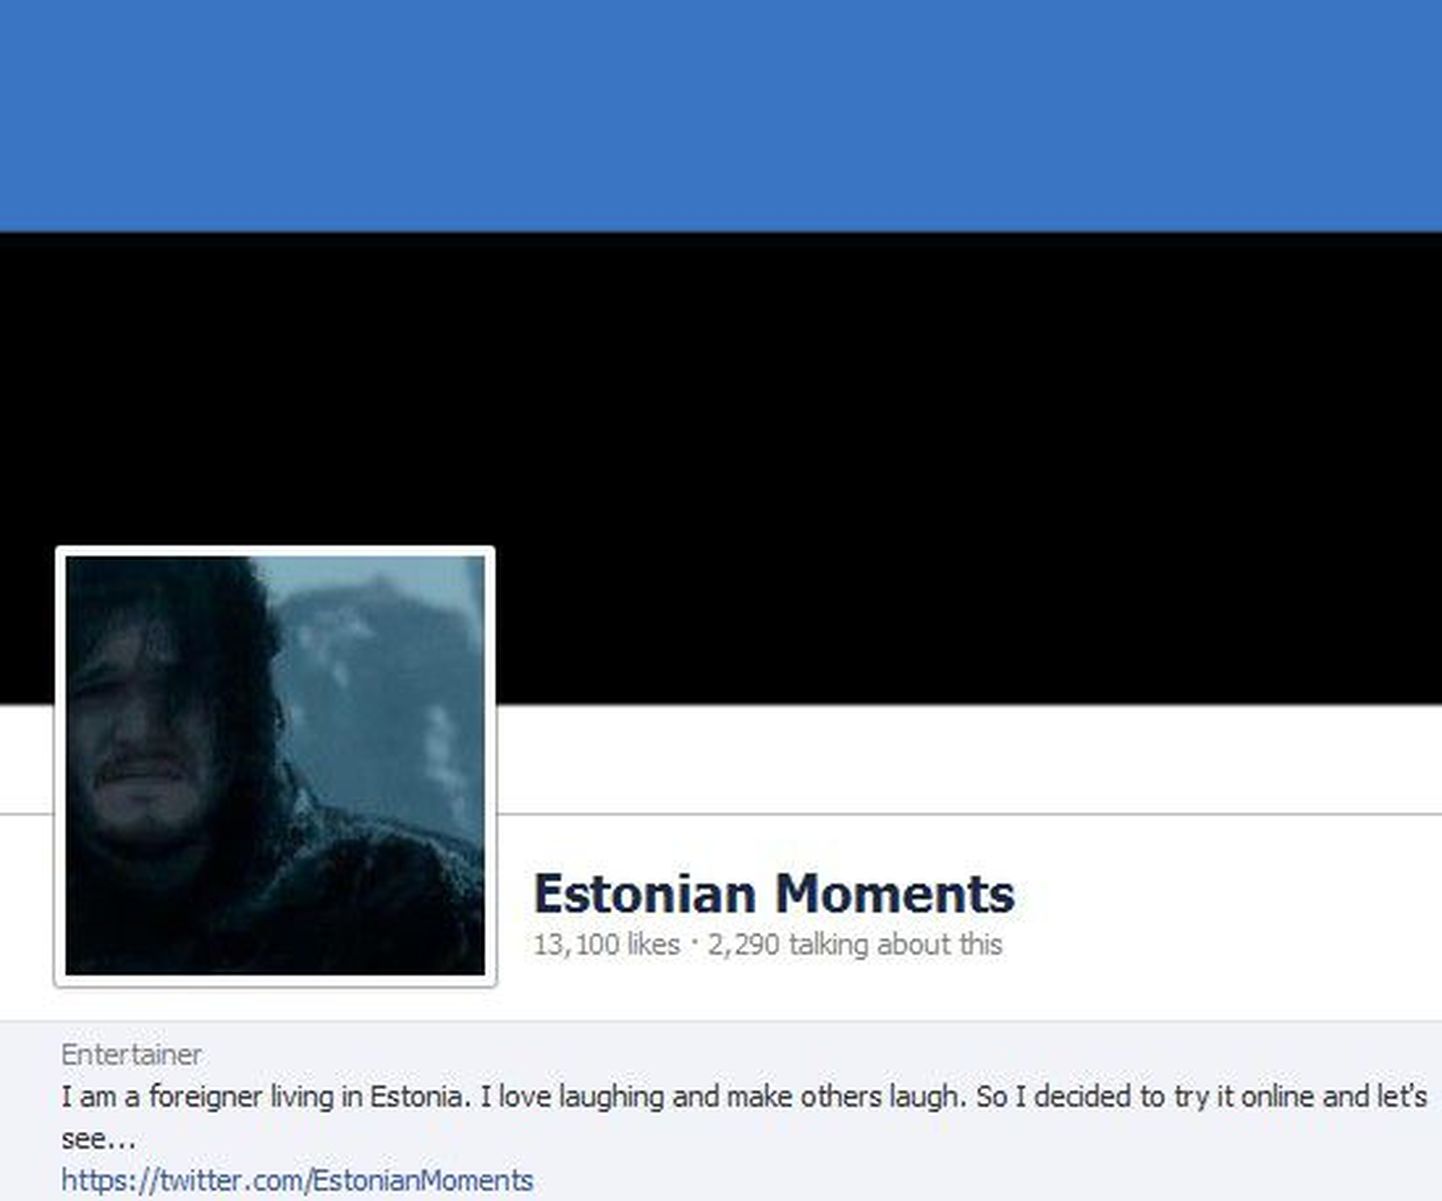 Estonian Moments